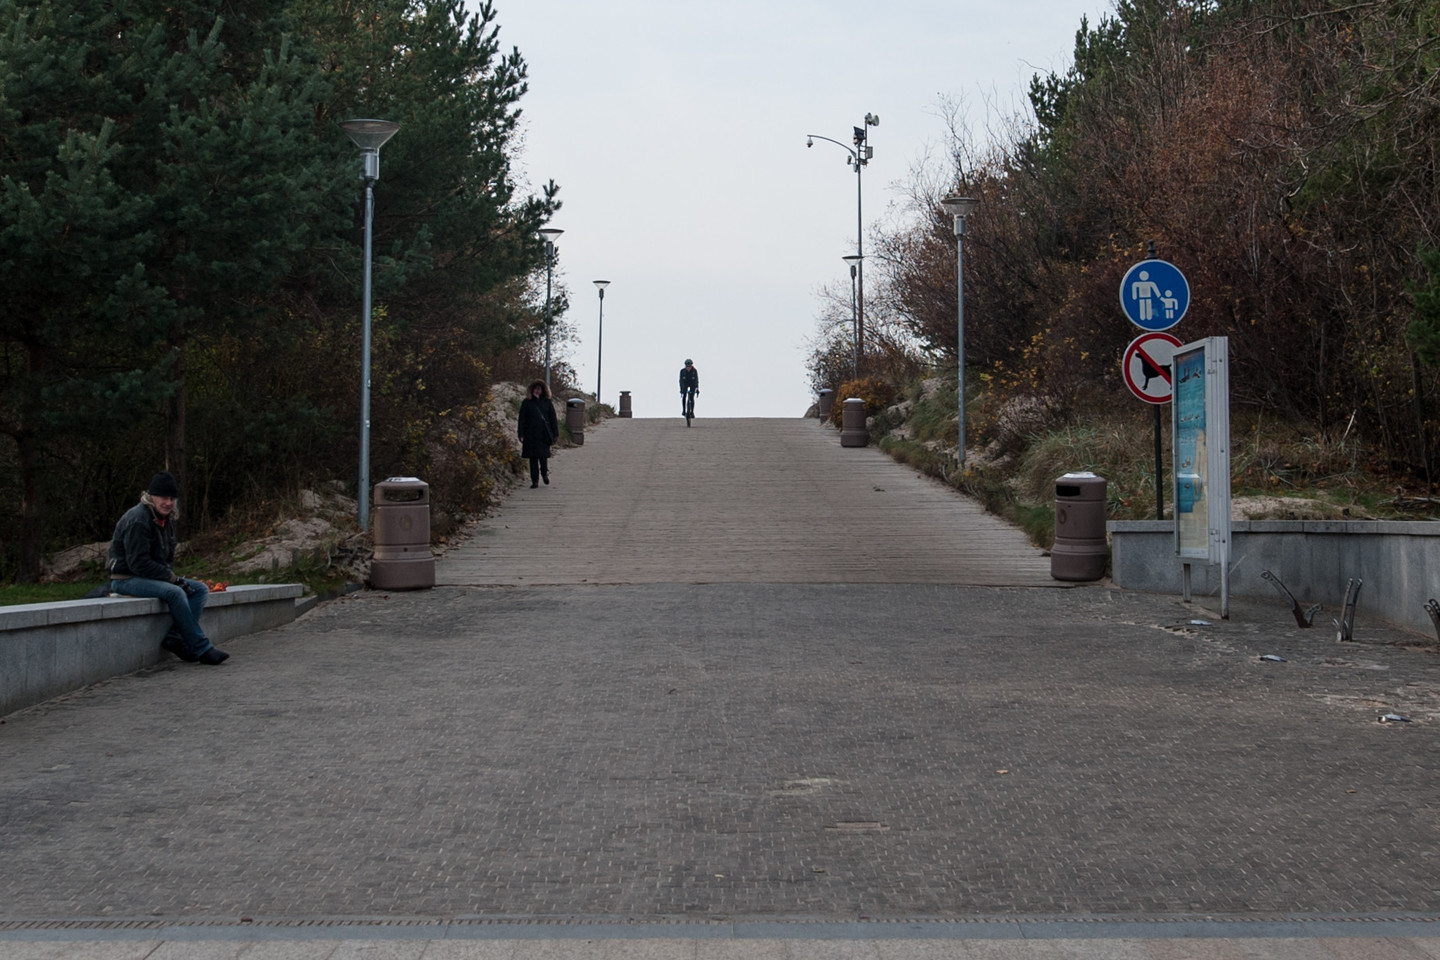 Populiariausias Lietuvos kurortas Palanga jau daug metų yra neįsivaizduojamas be savo simbolio – jūros tilto.<br>V.Ščiavinsko nuotr.